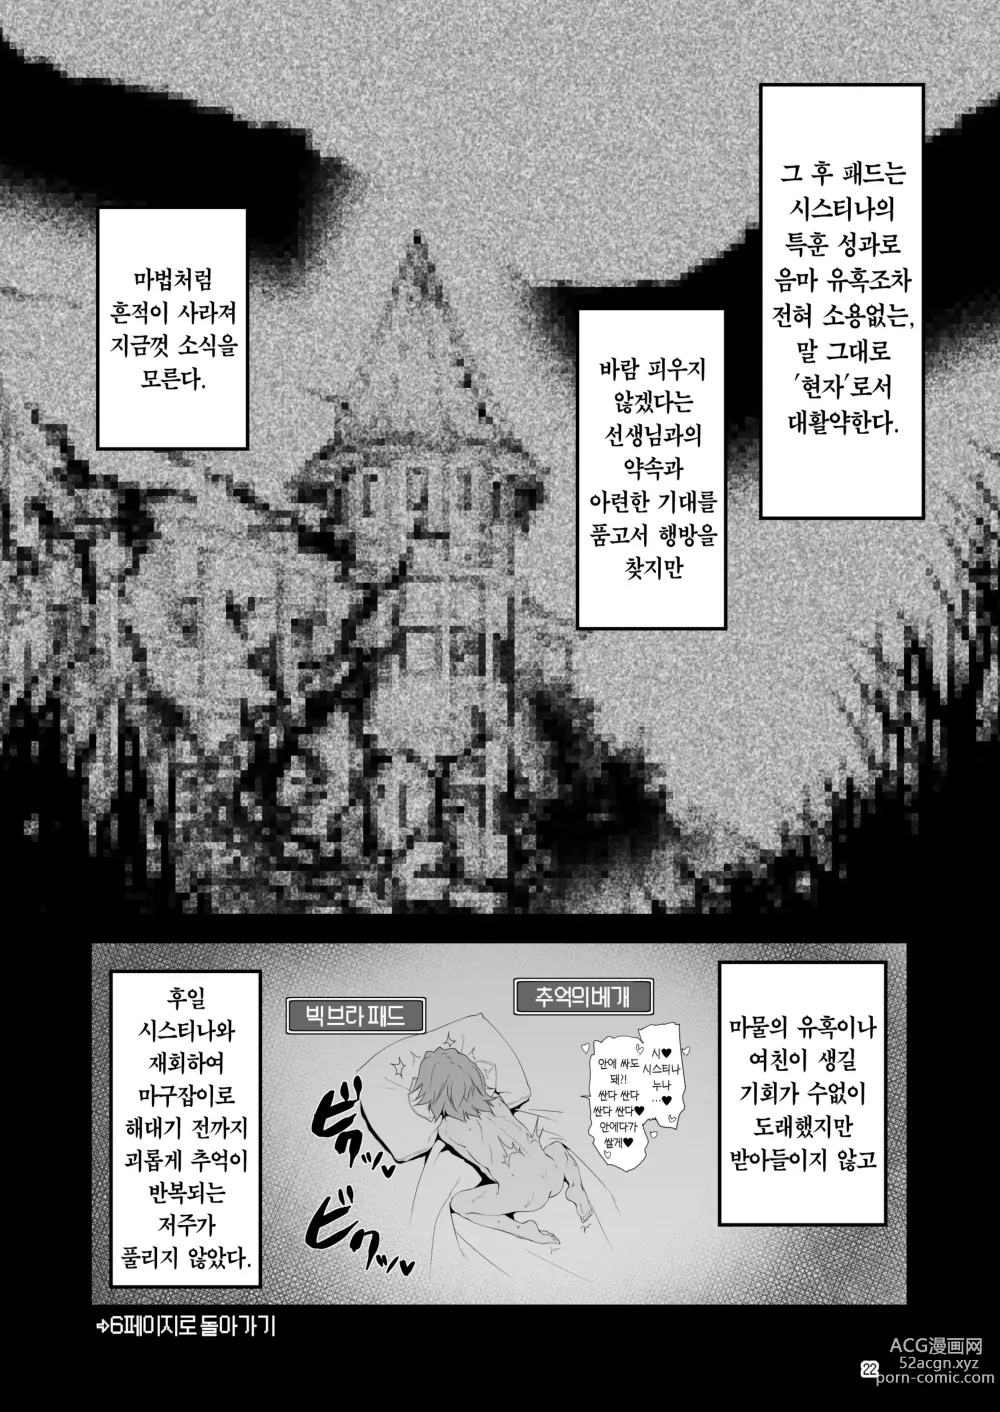 Page 22 of doujinshi 참으로 유감이지만 모험의 서 9는 사라져버렸습니다.